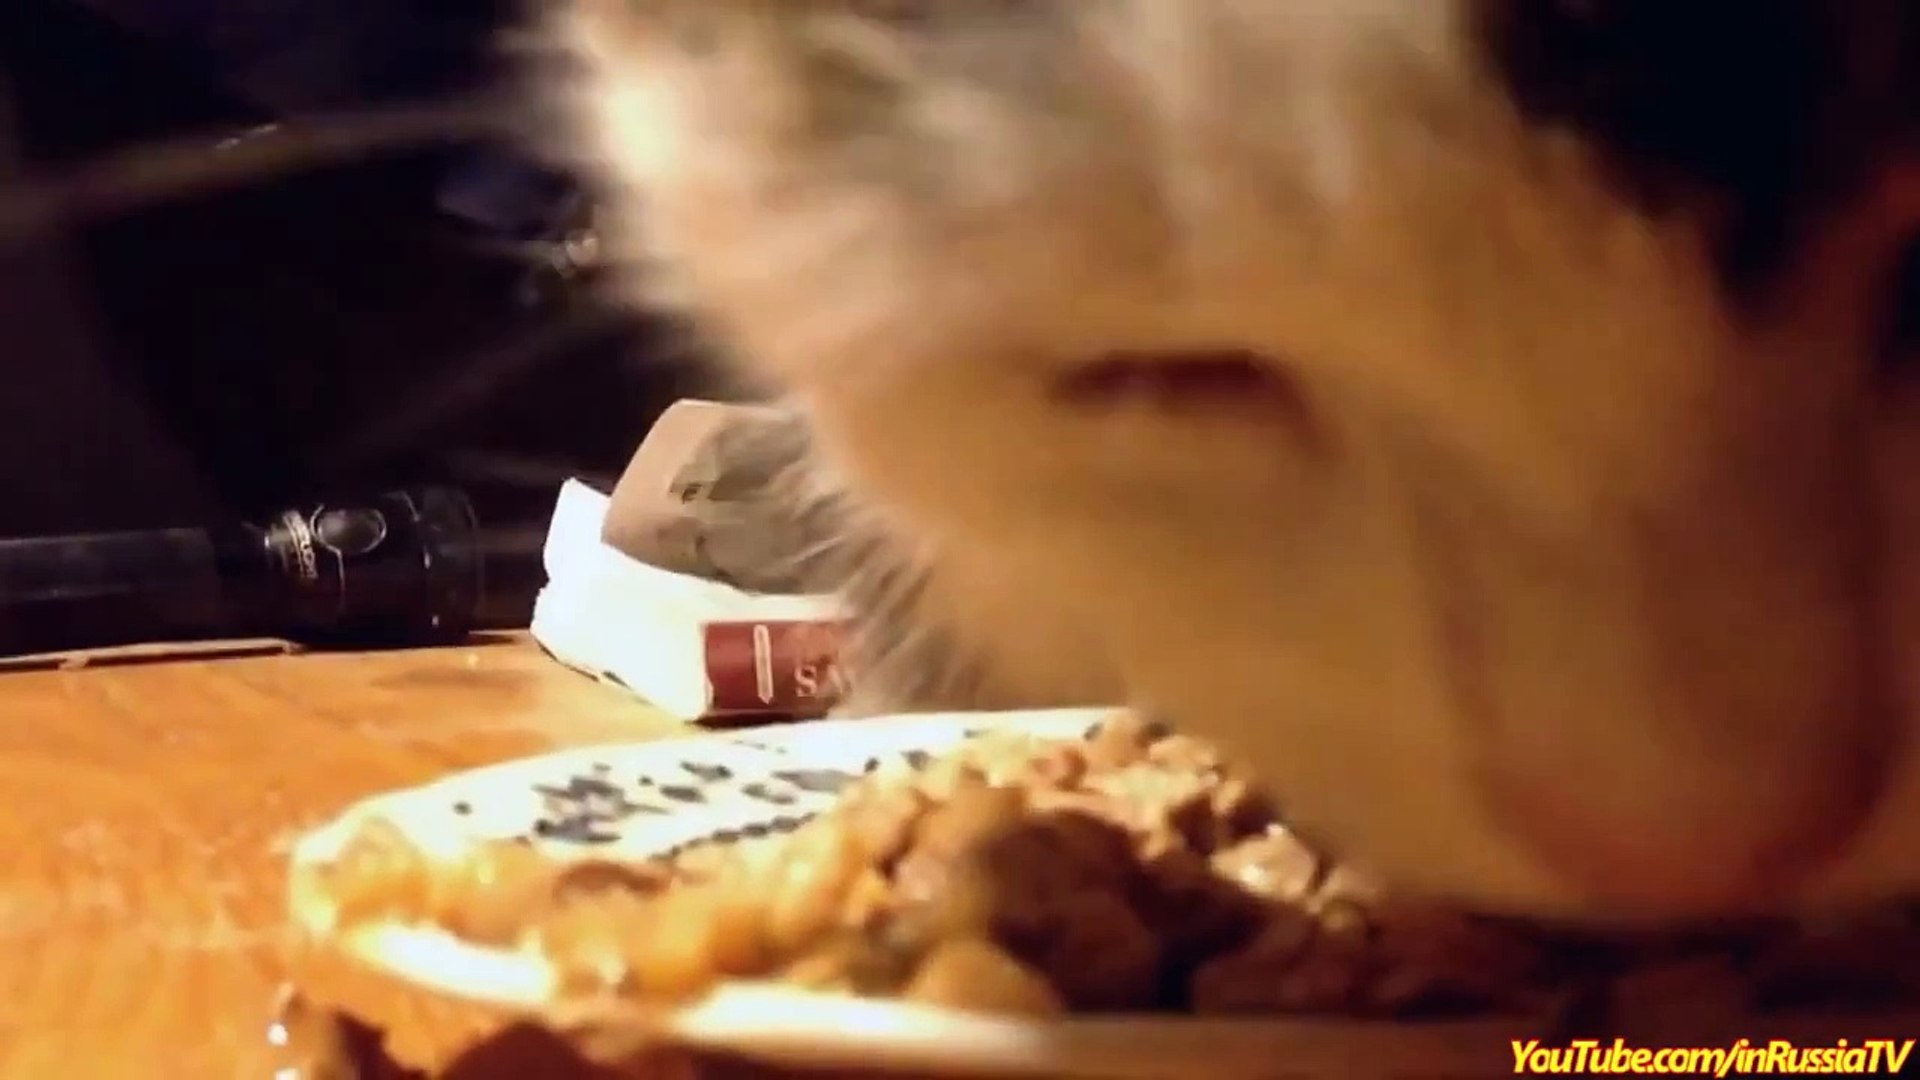 FUNNY VIDEOS  Funny Cats   Cat Eating Nom Nom   Funny Cat Videos   Funny Animals   Cats Funny Videos